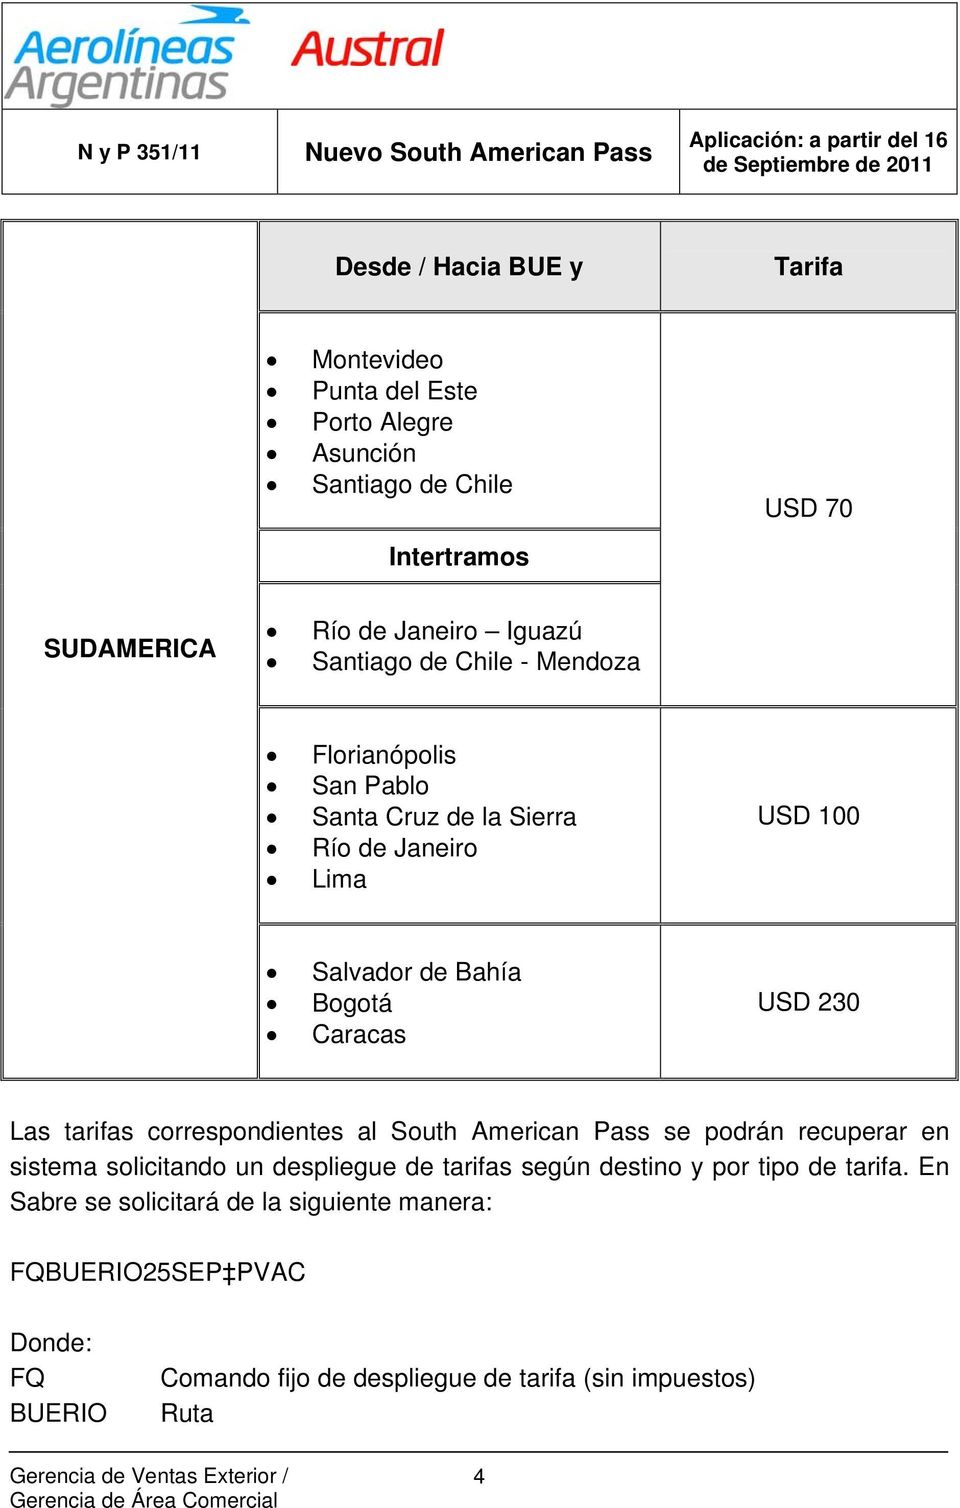 Las tarifas correspondientes al South American Pass se podrán recuperar en sistema solicitando un despliegue de tarifas según destino y por tipo